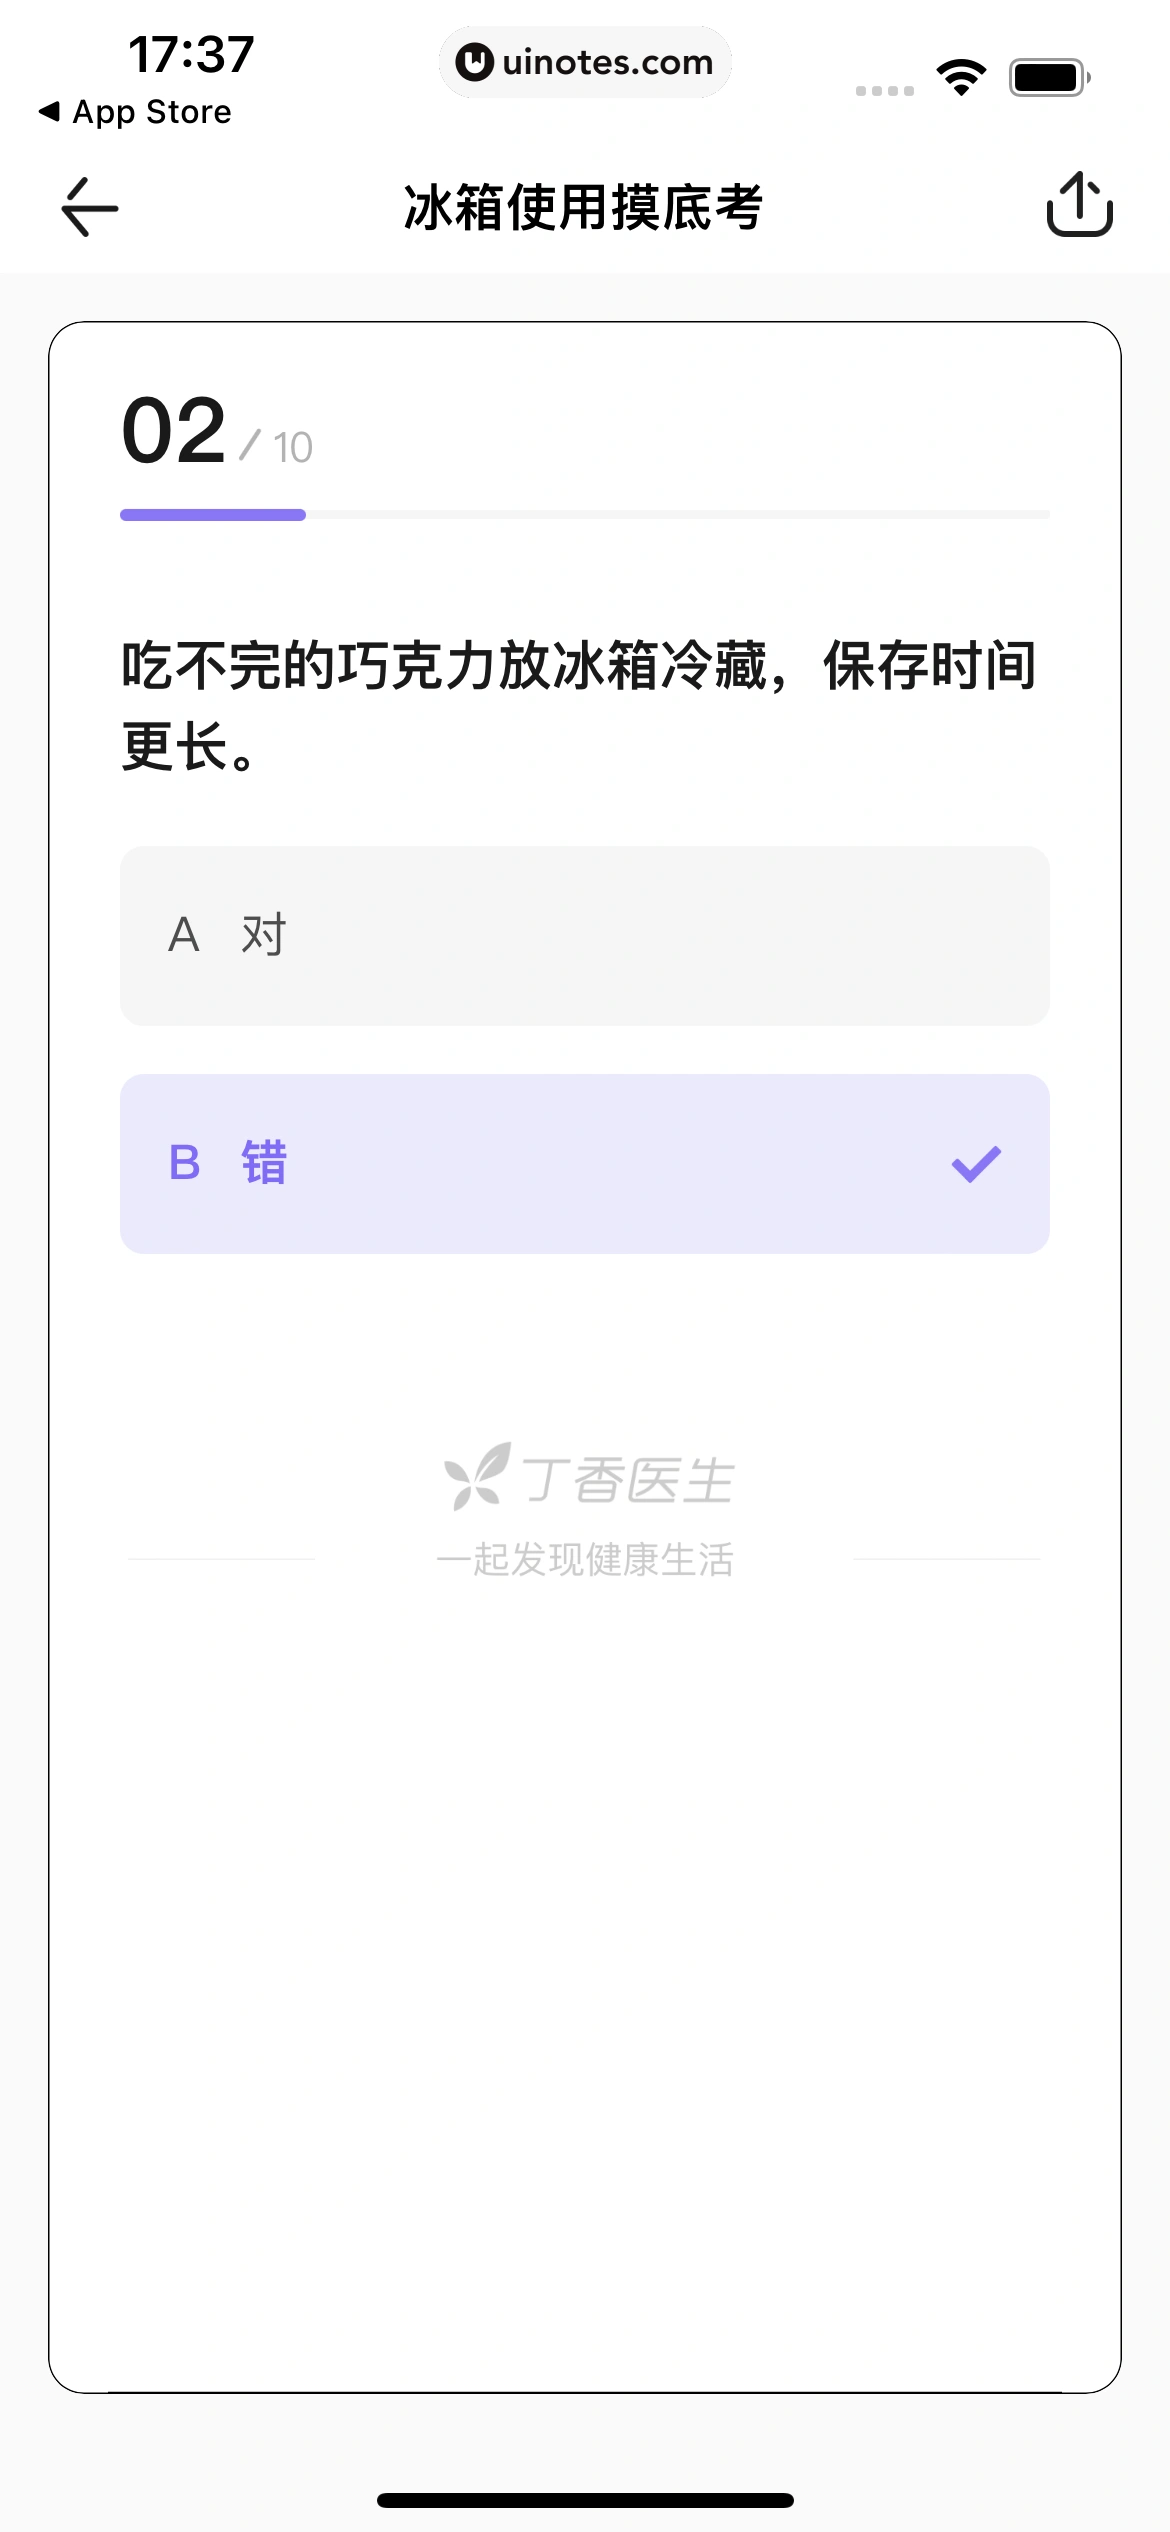 丁香医生 App 截图 077 - UI Notes